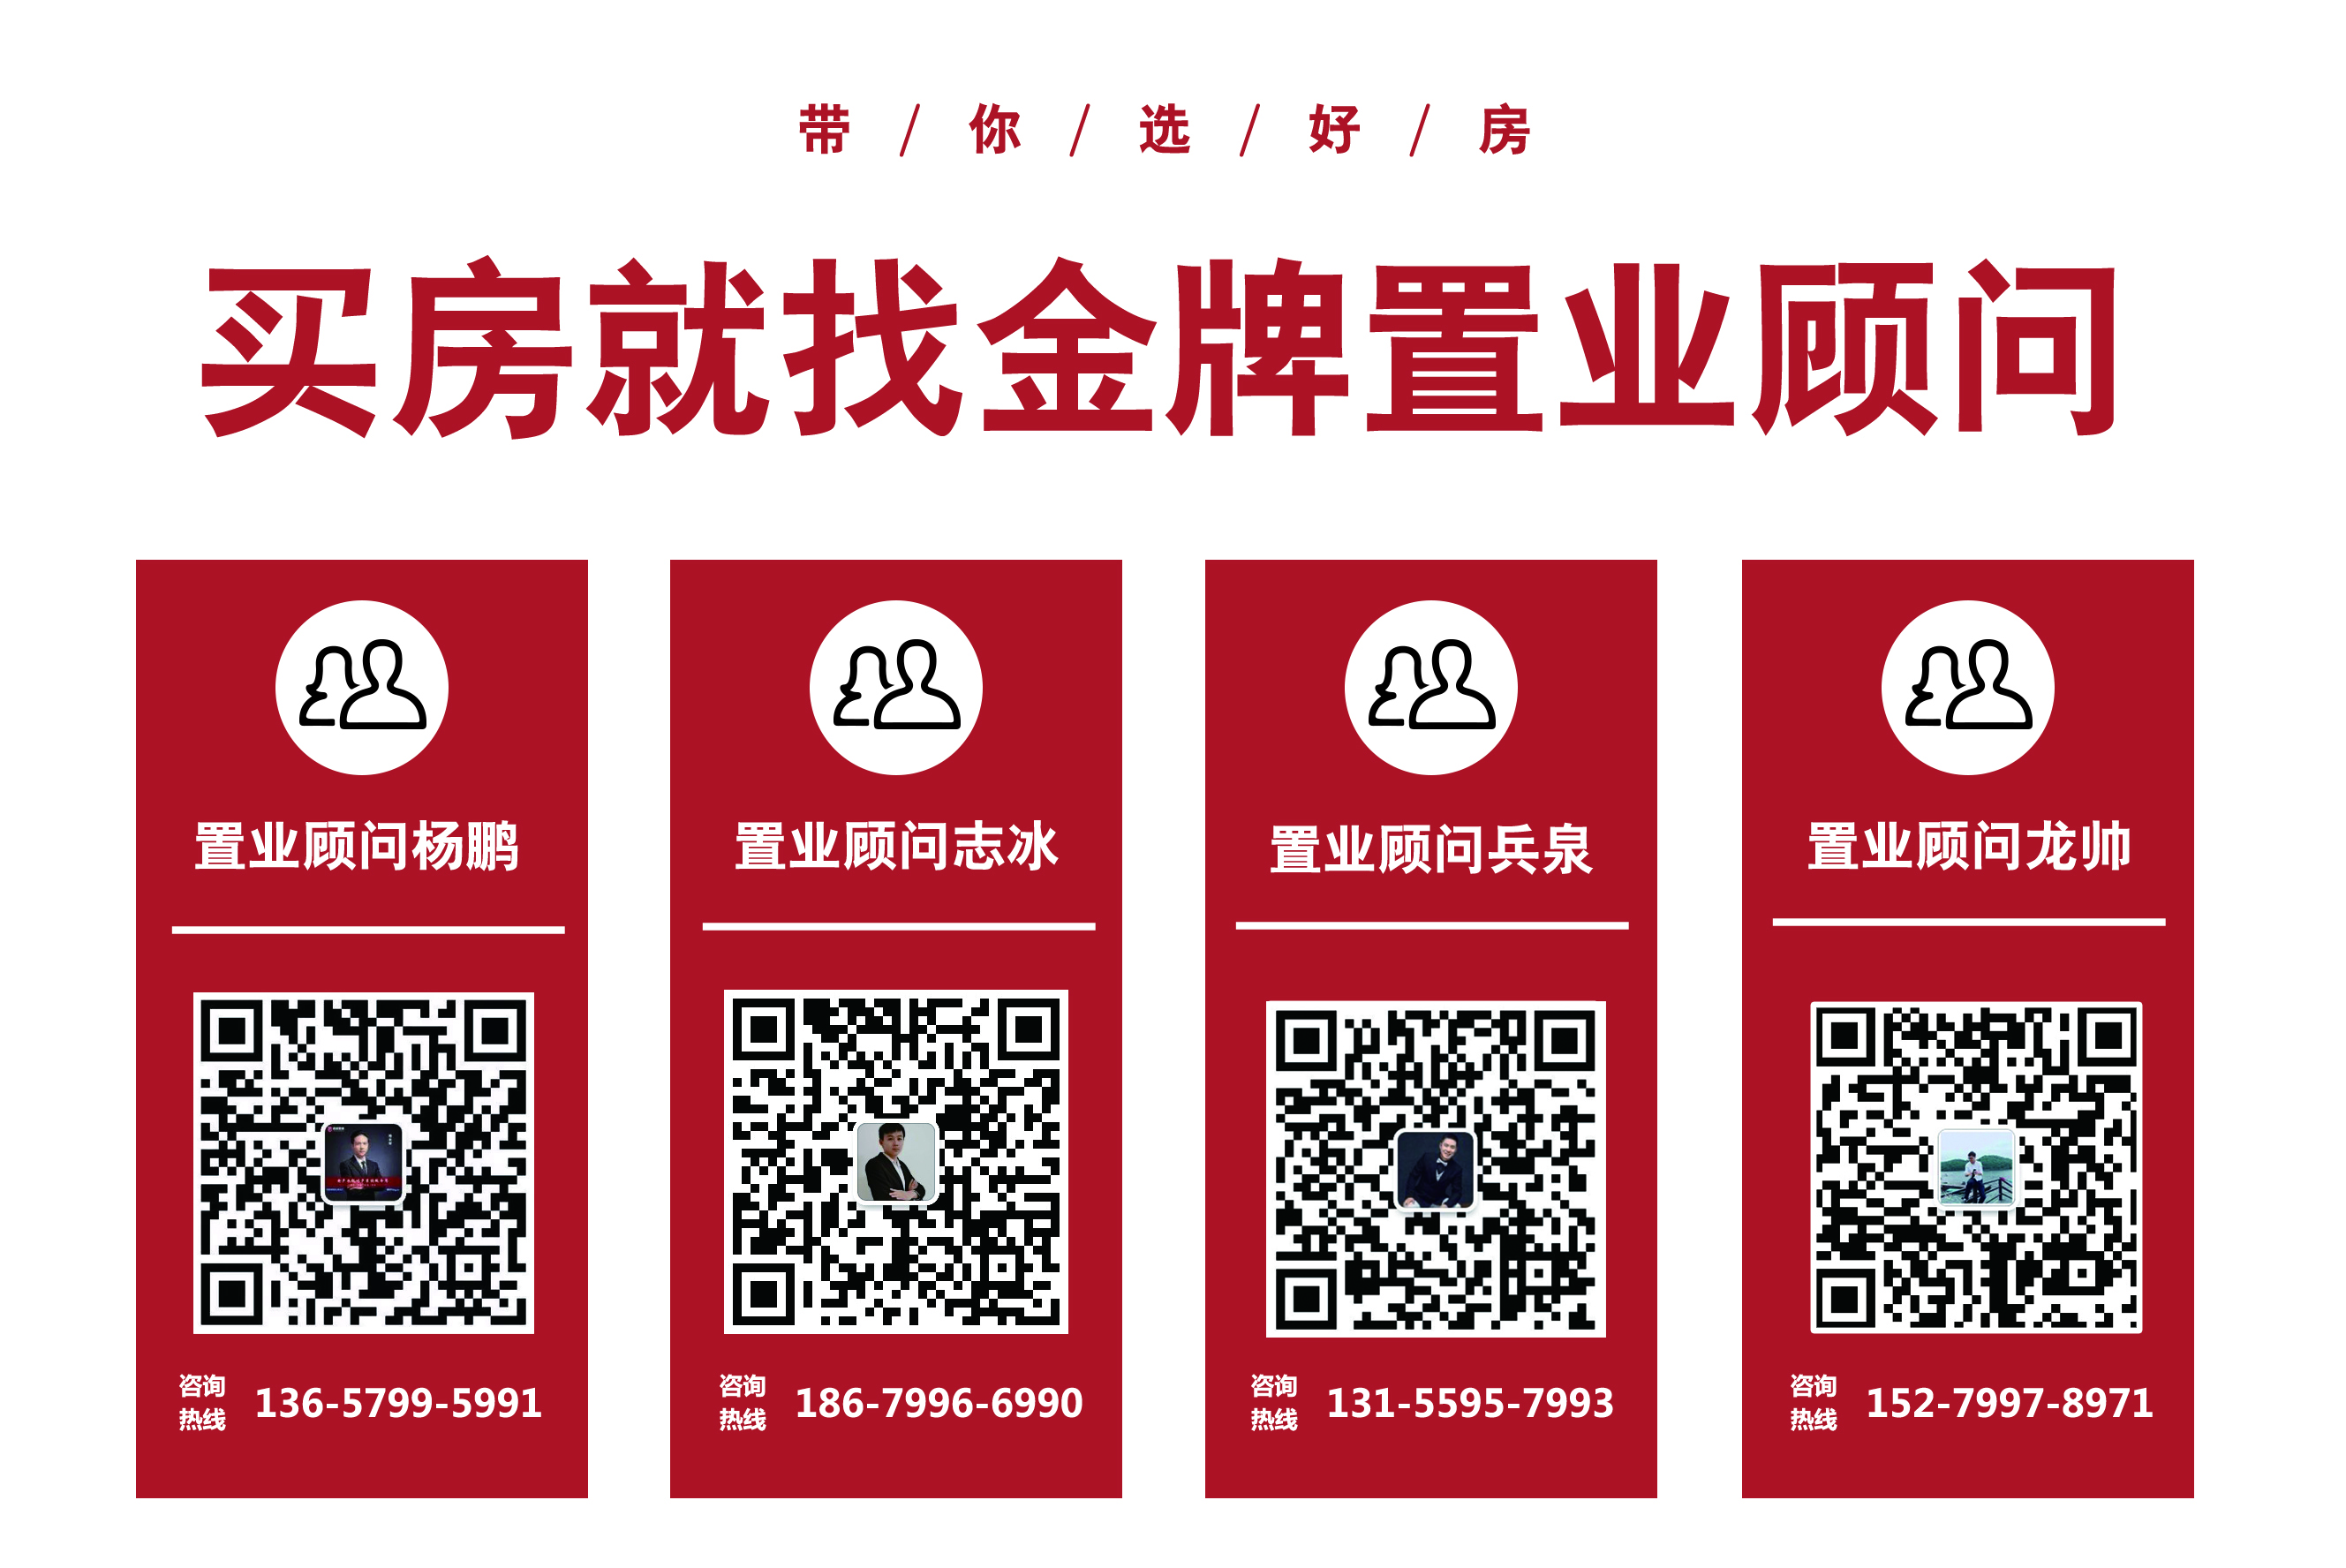 萍乡2020年前三季度数据发布啦！房价是涨是跌？